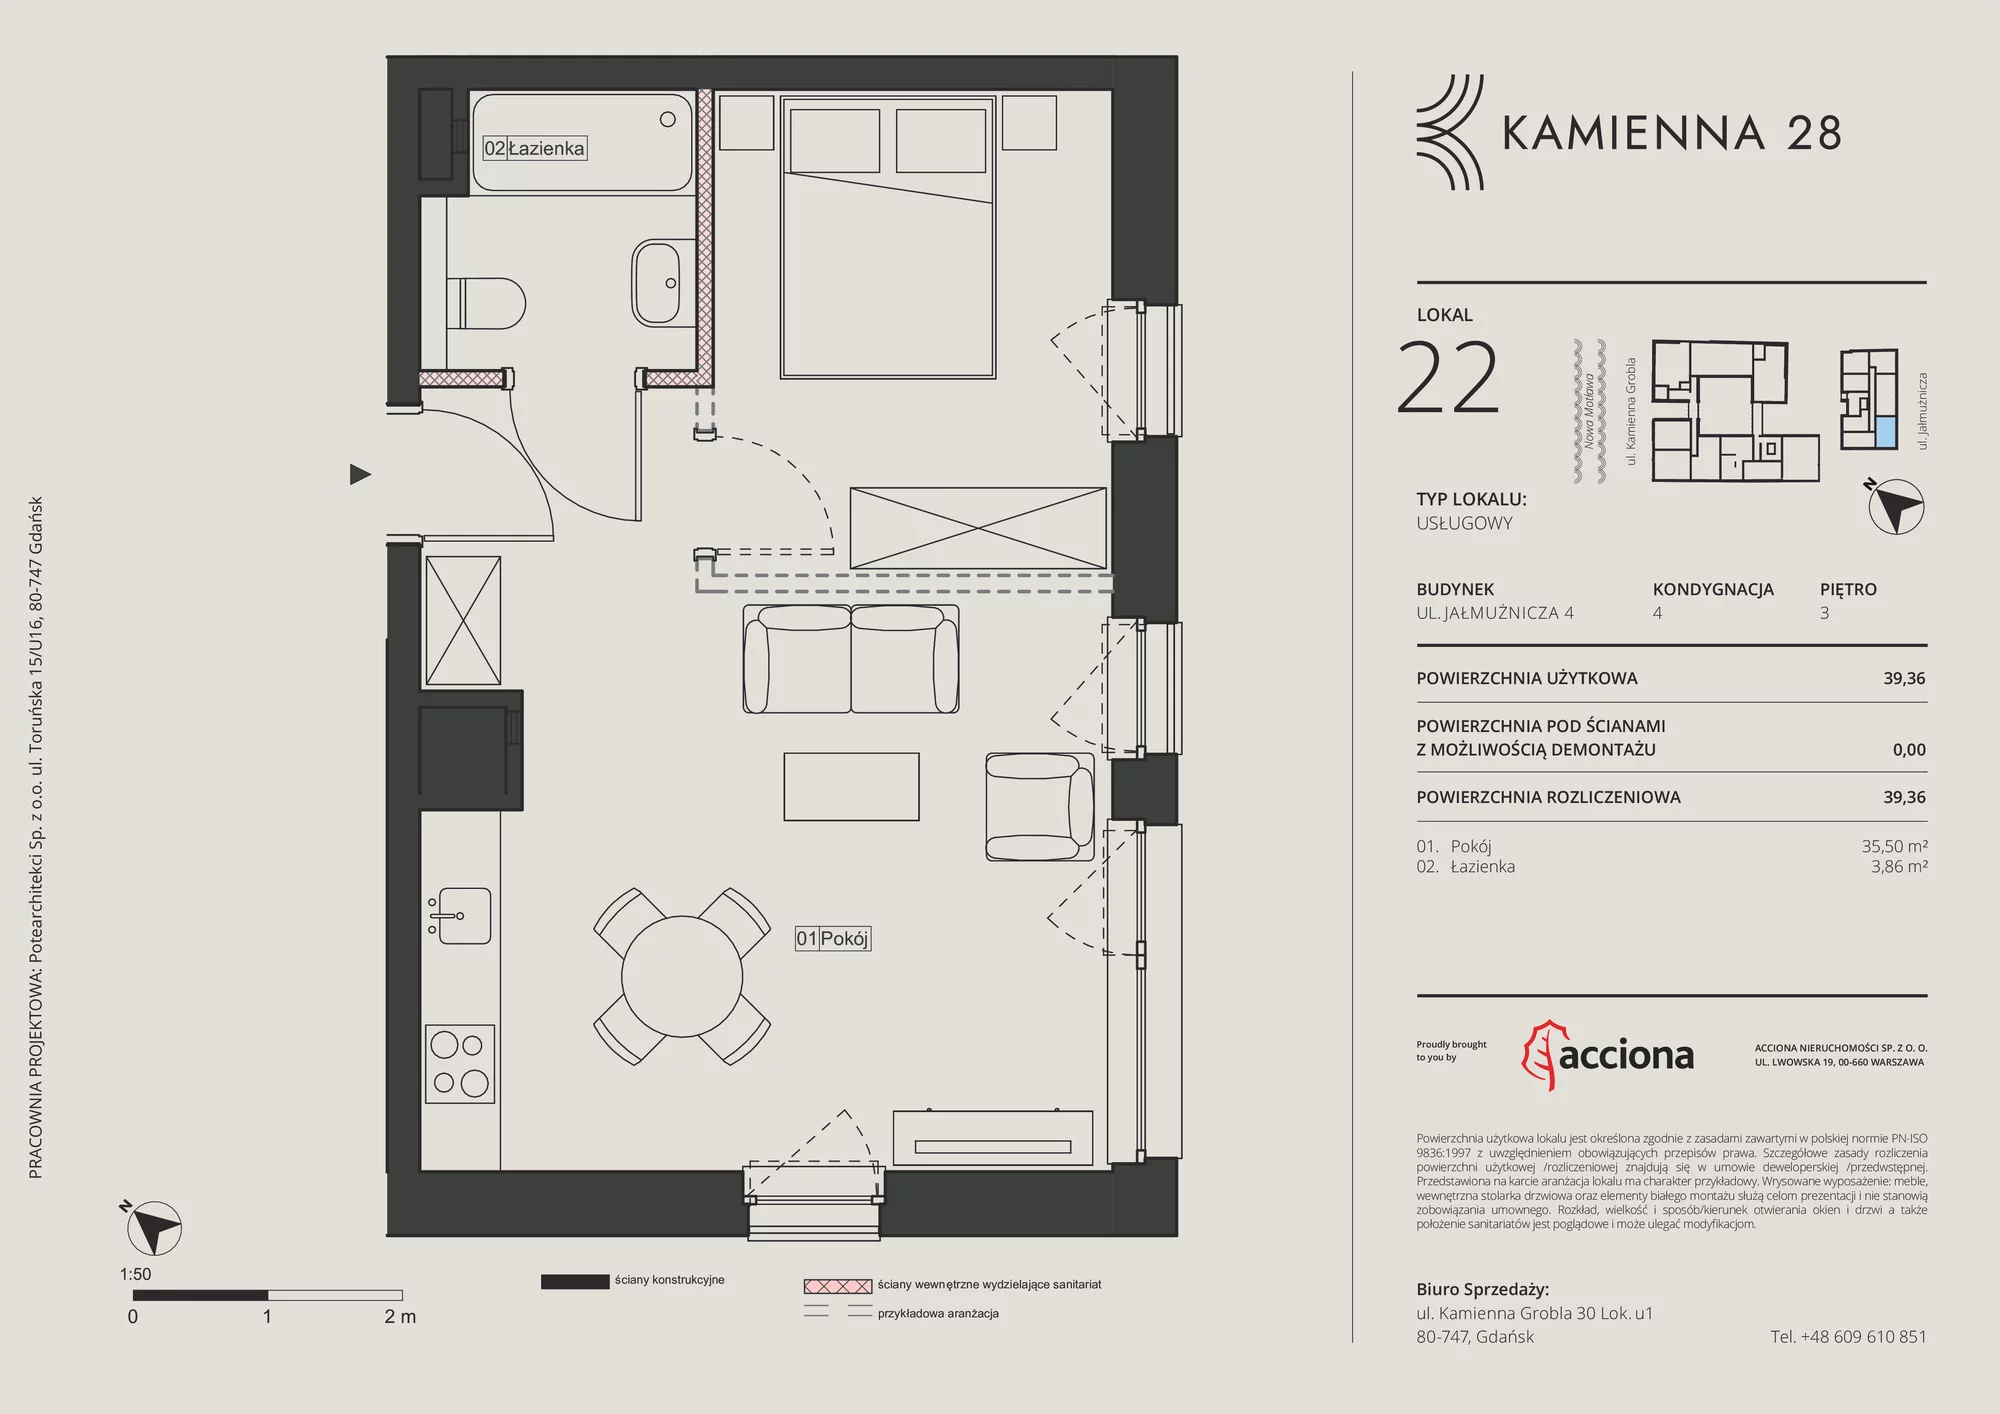 Apartament inwestycyjny 39,36 m², piętro 3, oferta nr 4.22, Kamienna 28 - apartamenty inwestycyjne, Gdańsk, Śródmieście, Dolne Miasto, ul. Jałmużnicza 4